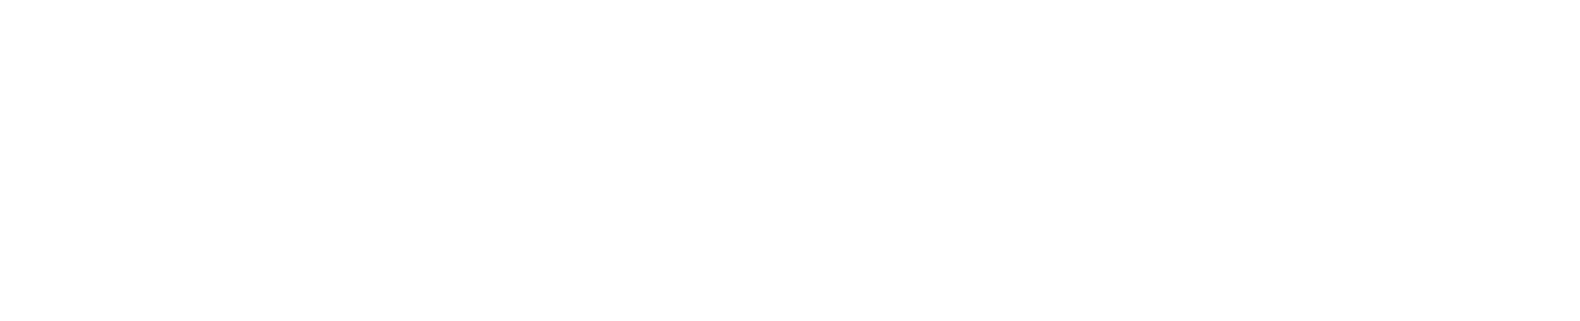 Babcock International Group logo large for dark backgrounds (transparent PNG)